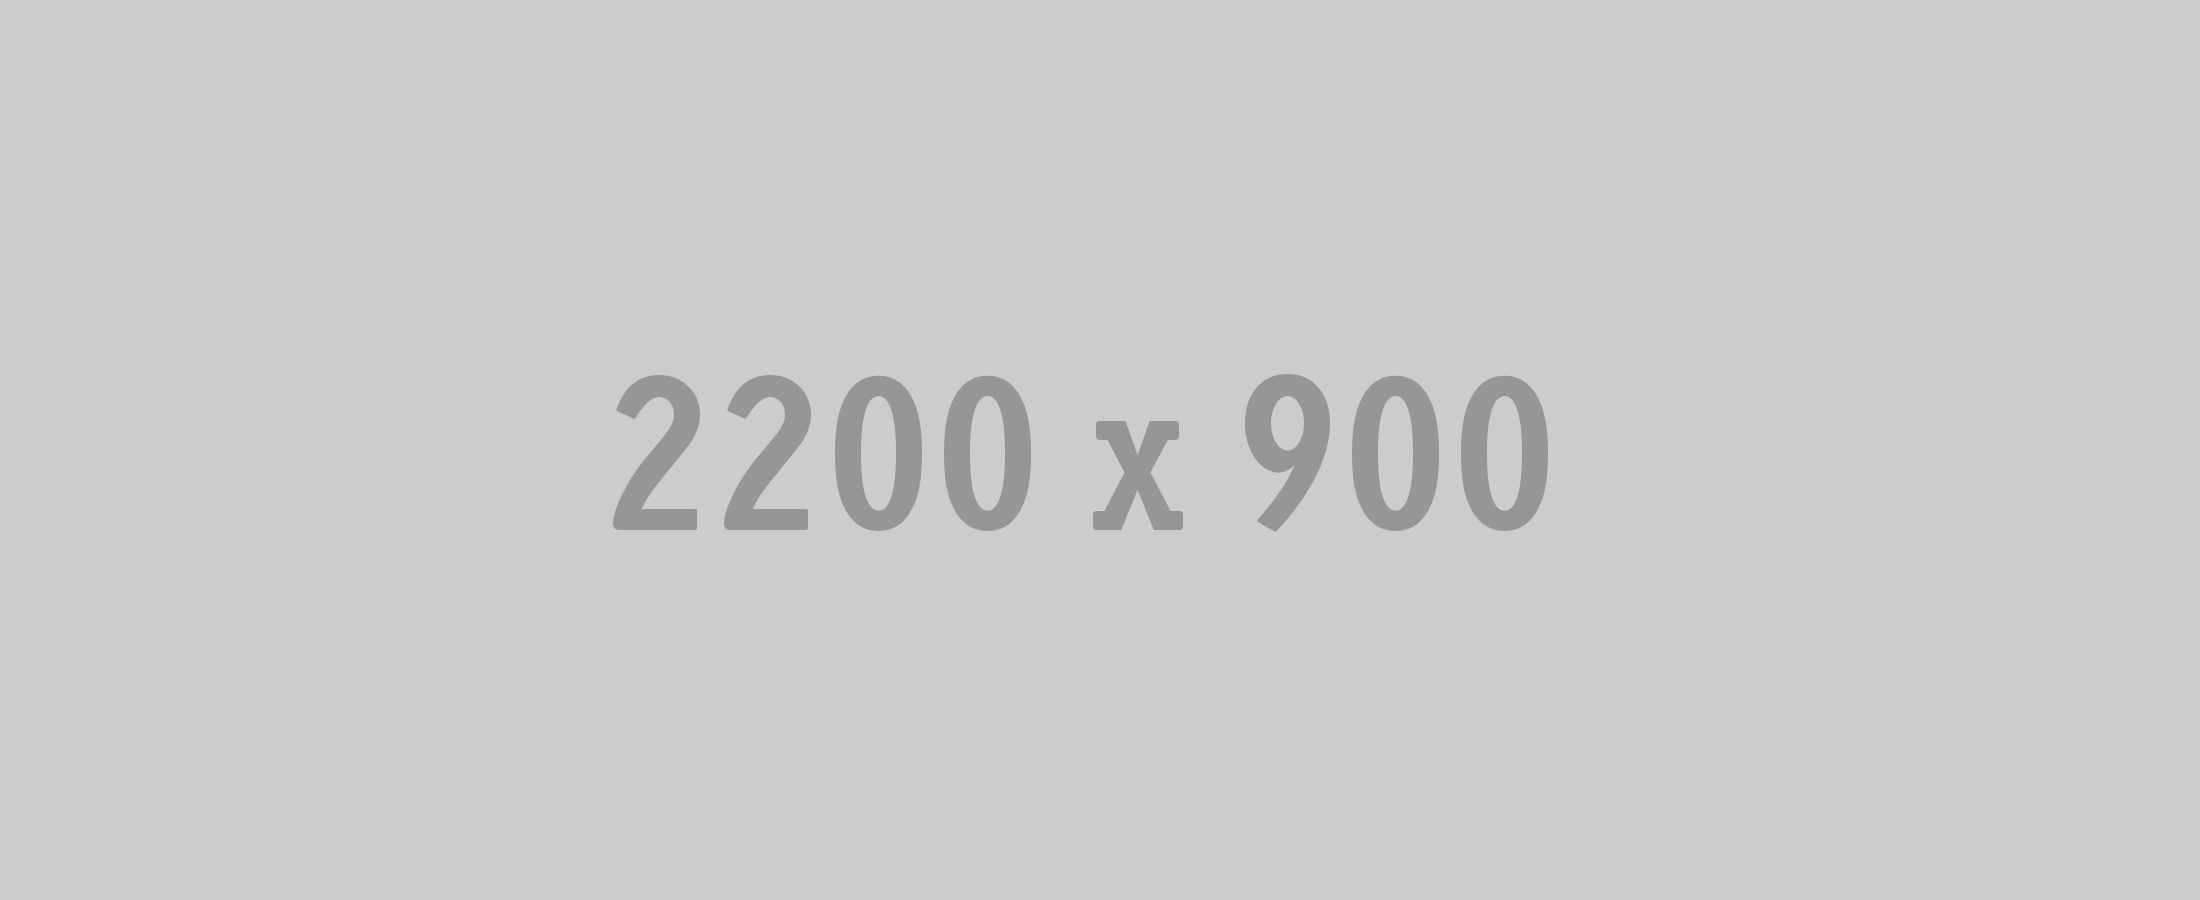 2200x900